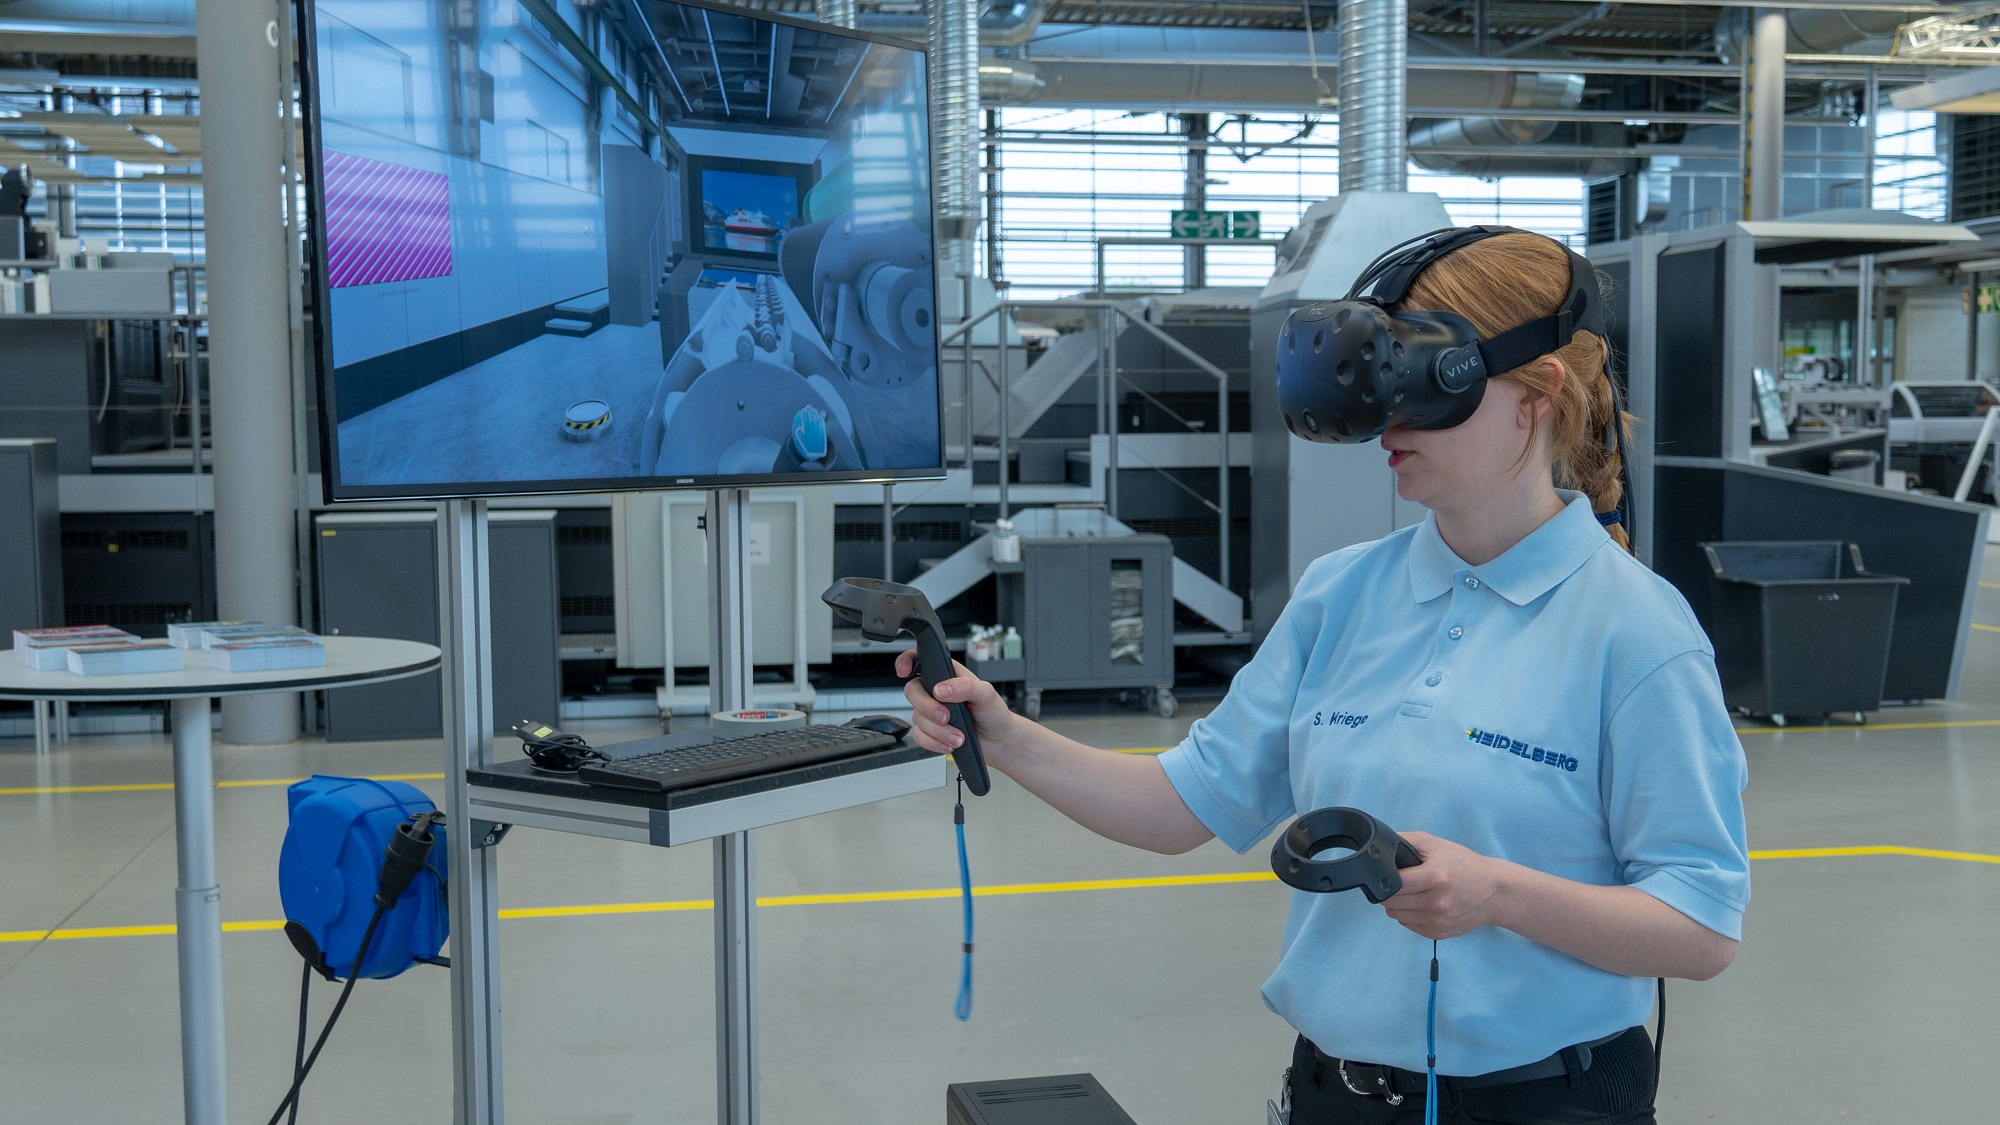 Vr объект. VR тренажеры на производстве. Виртуальная реальность в образовании. Персонал в виртуальной реальности. VR технологии в образовании.